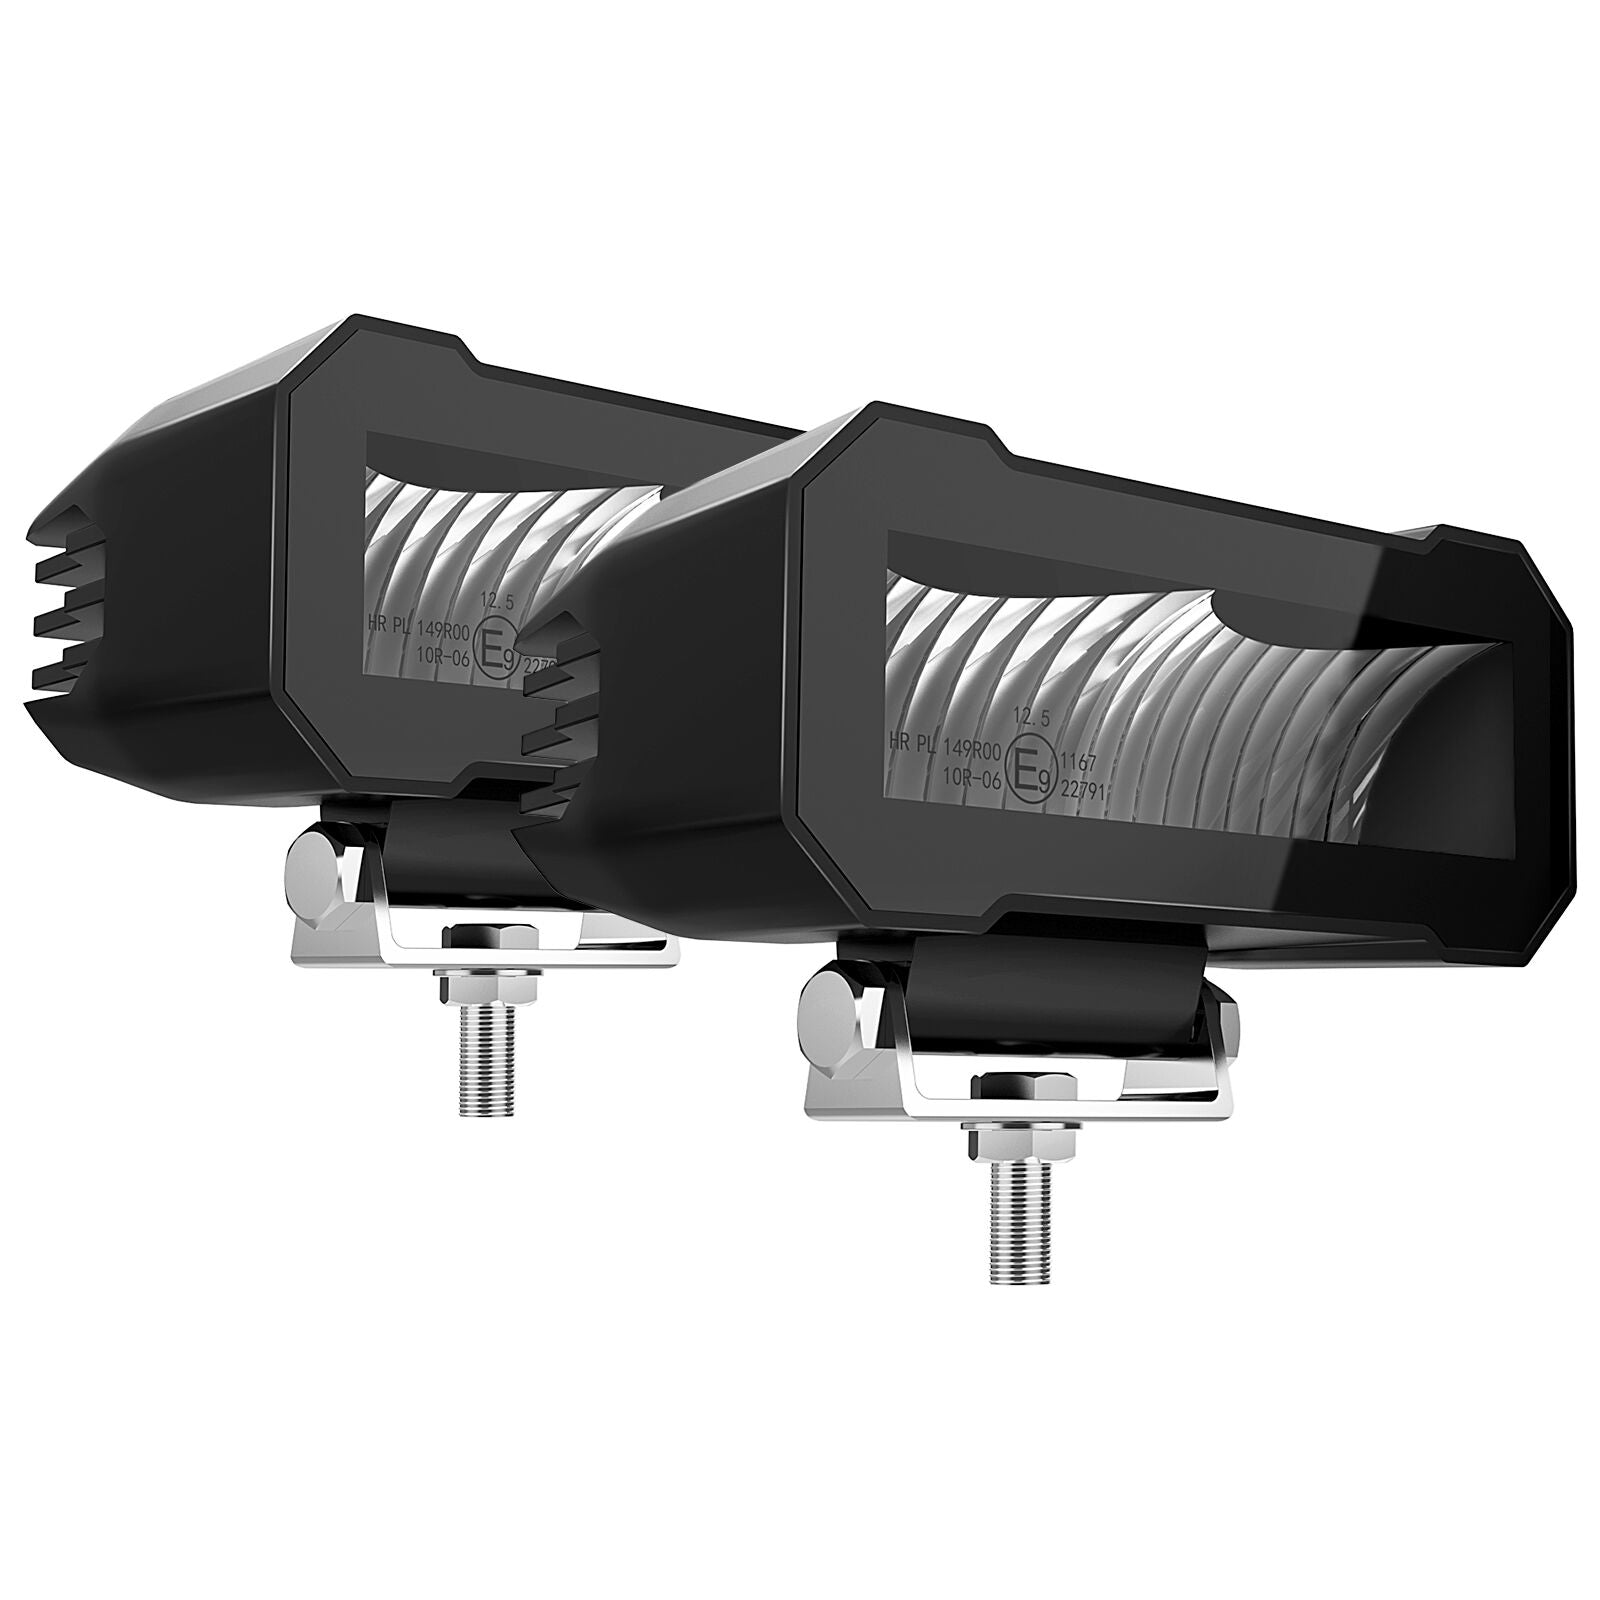 LED Pods Light Innovative Bezel-Less LED Driving Spot Light Fog Light, IP67 Waterproof-2 pack